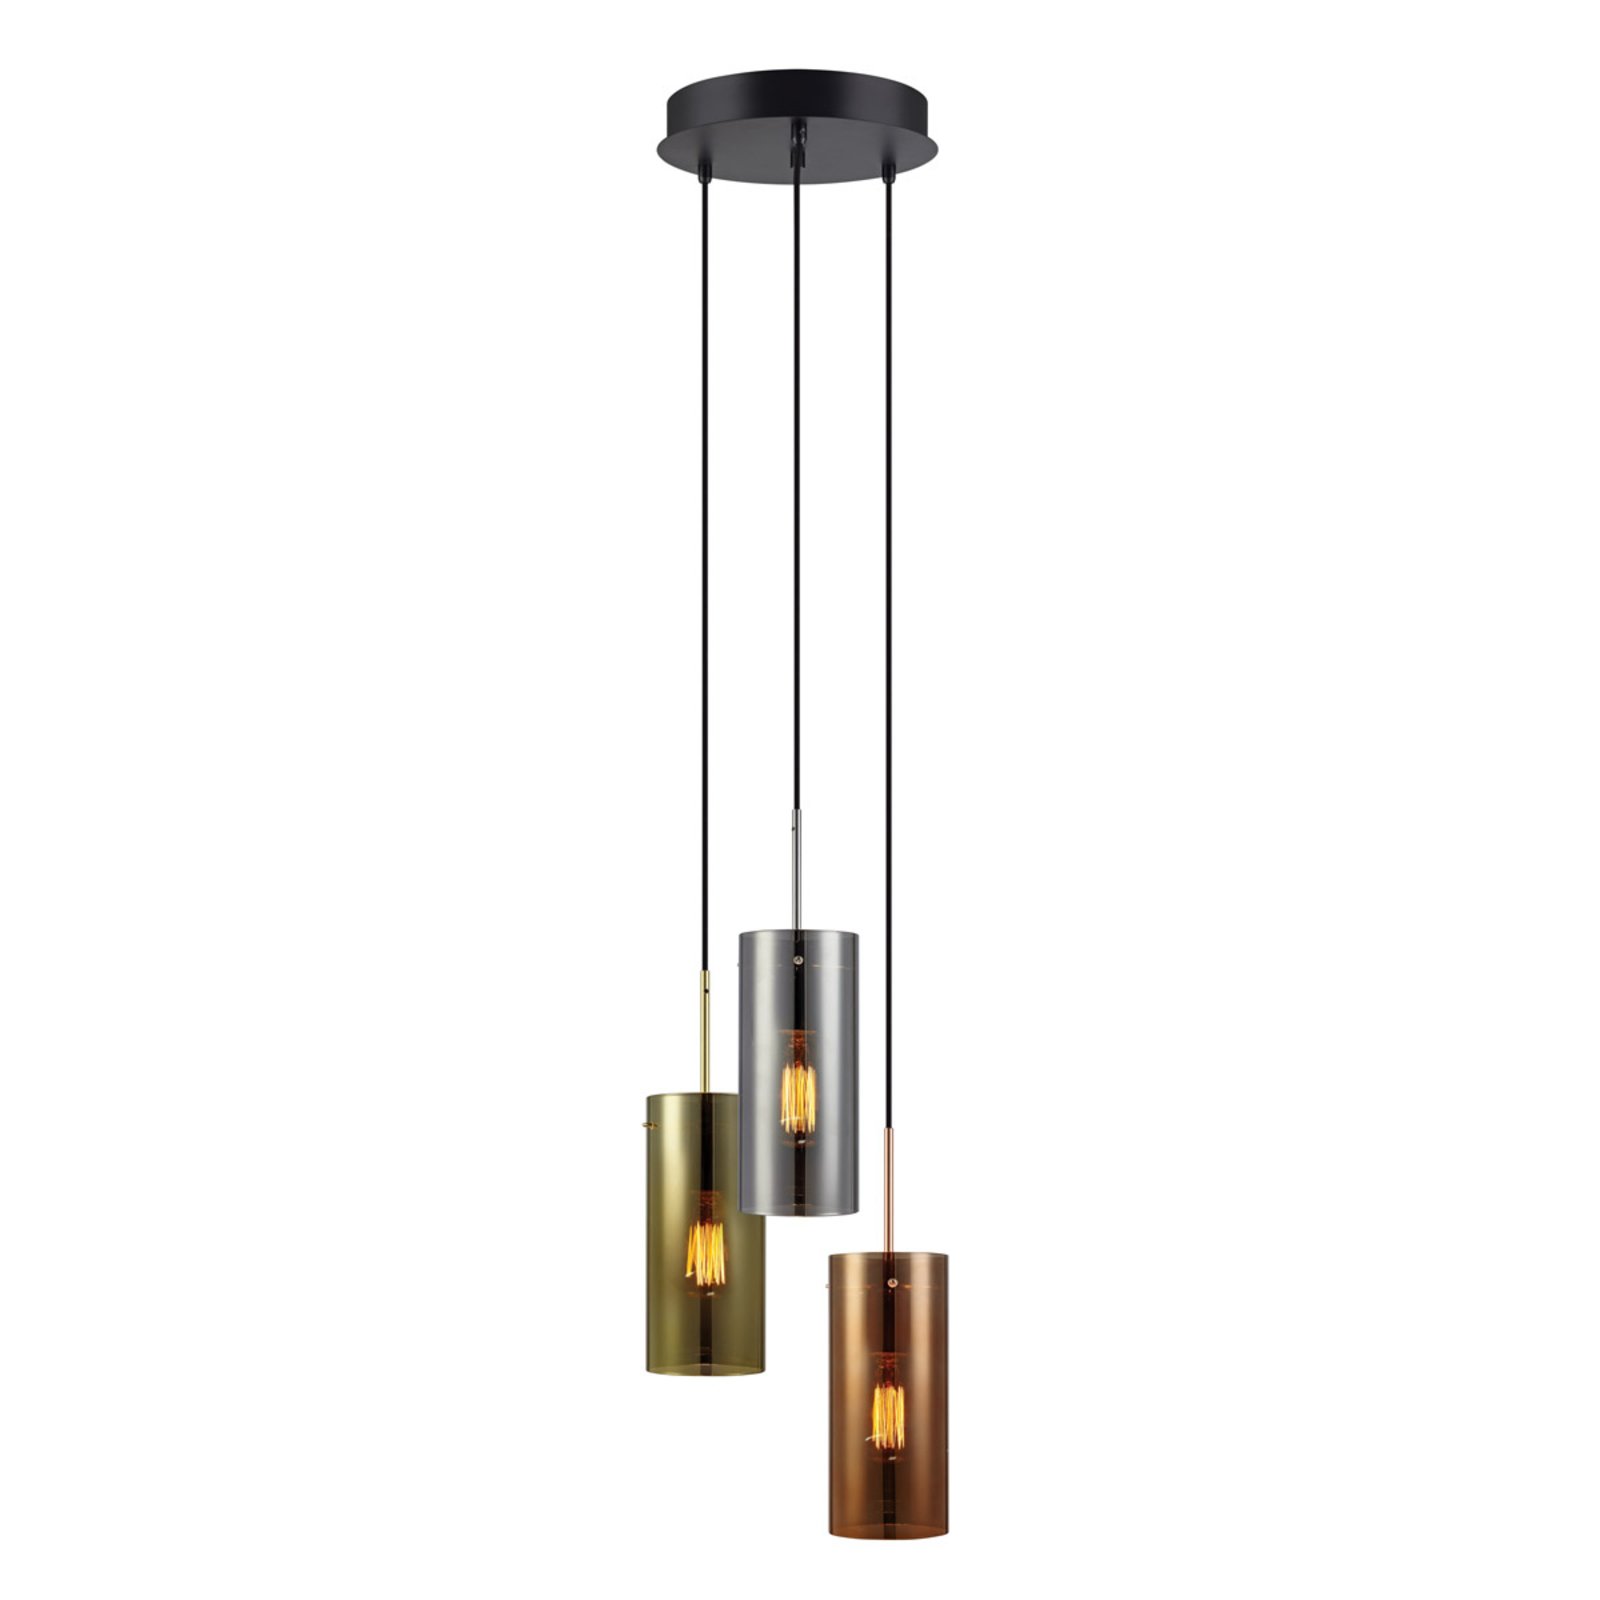 Storm - висяща лампа с три светлини в комбинация от цветове